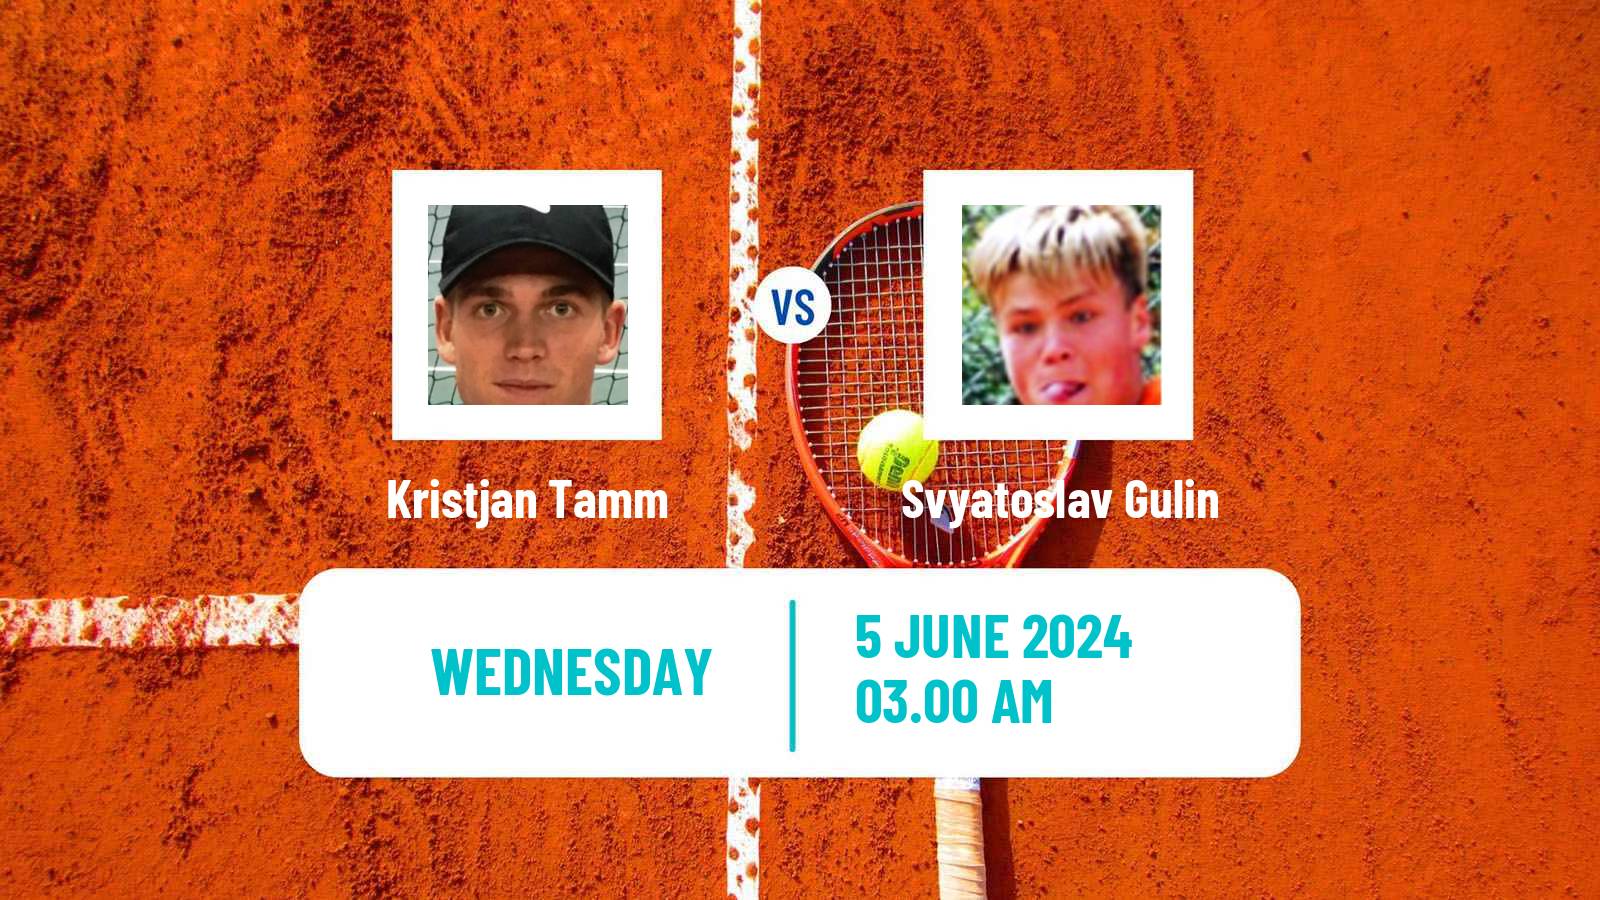 Tennis ITF M25 Kursumlijska Banja 2 Men Kristjan Tamm - Svyatoslav Gulin